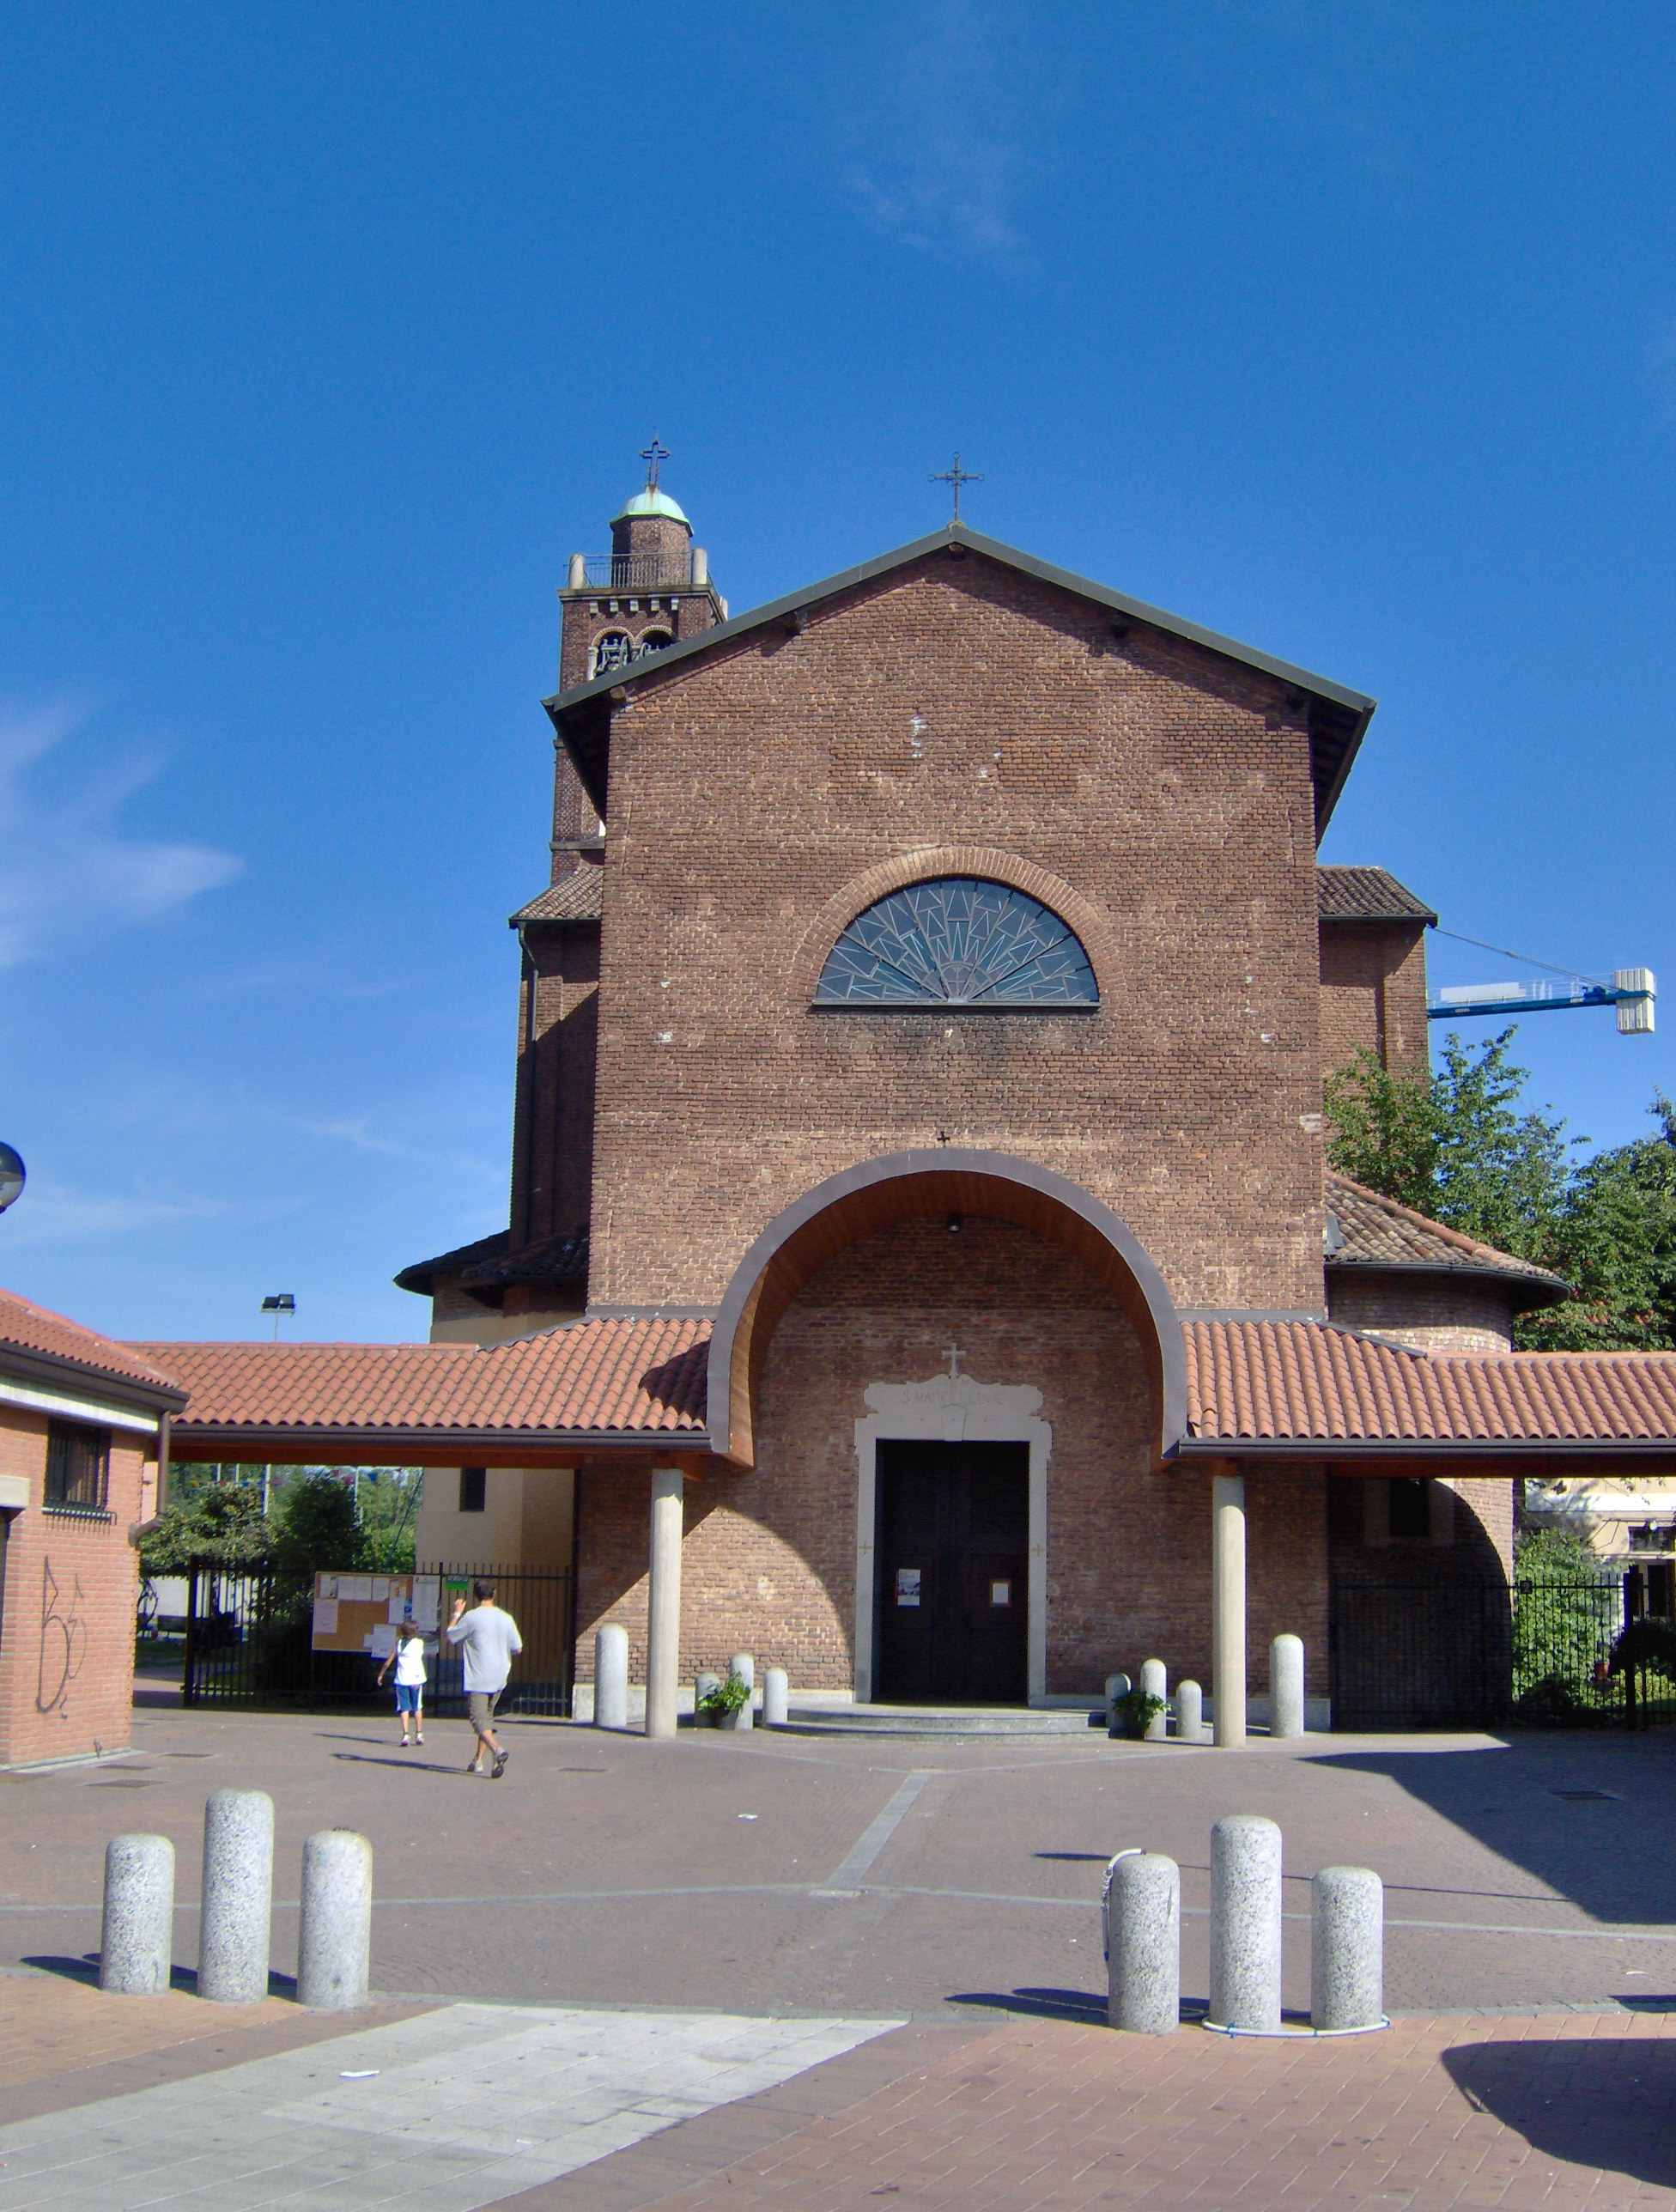 Church of Santa Marcellina in Muggiano, Milano - Wikipedia Commons